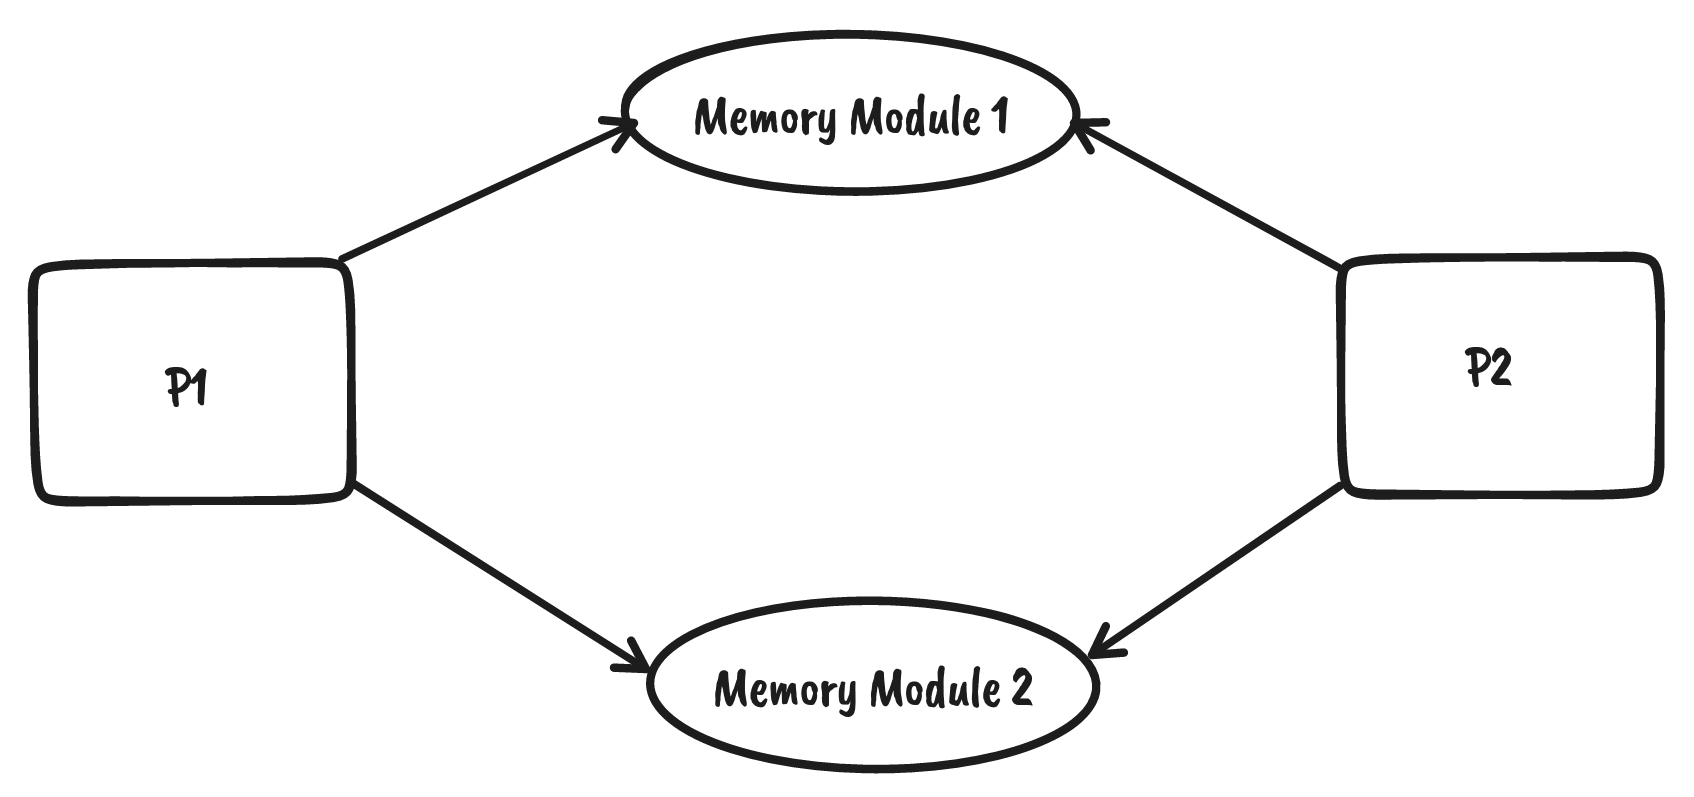 processor-memory-architecture